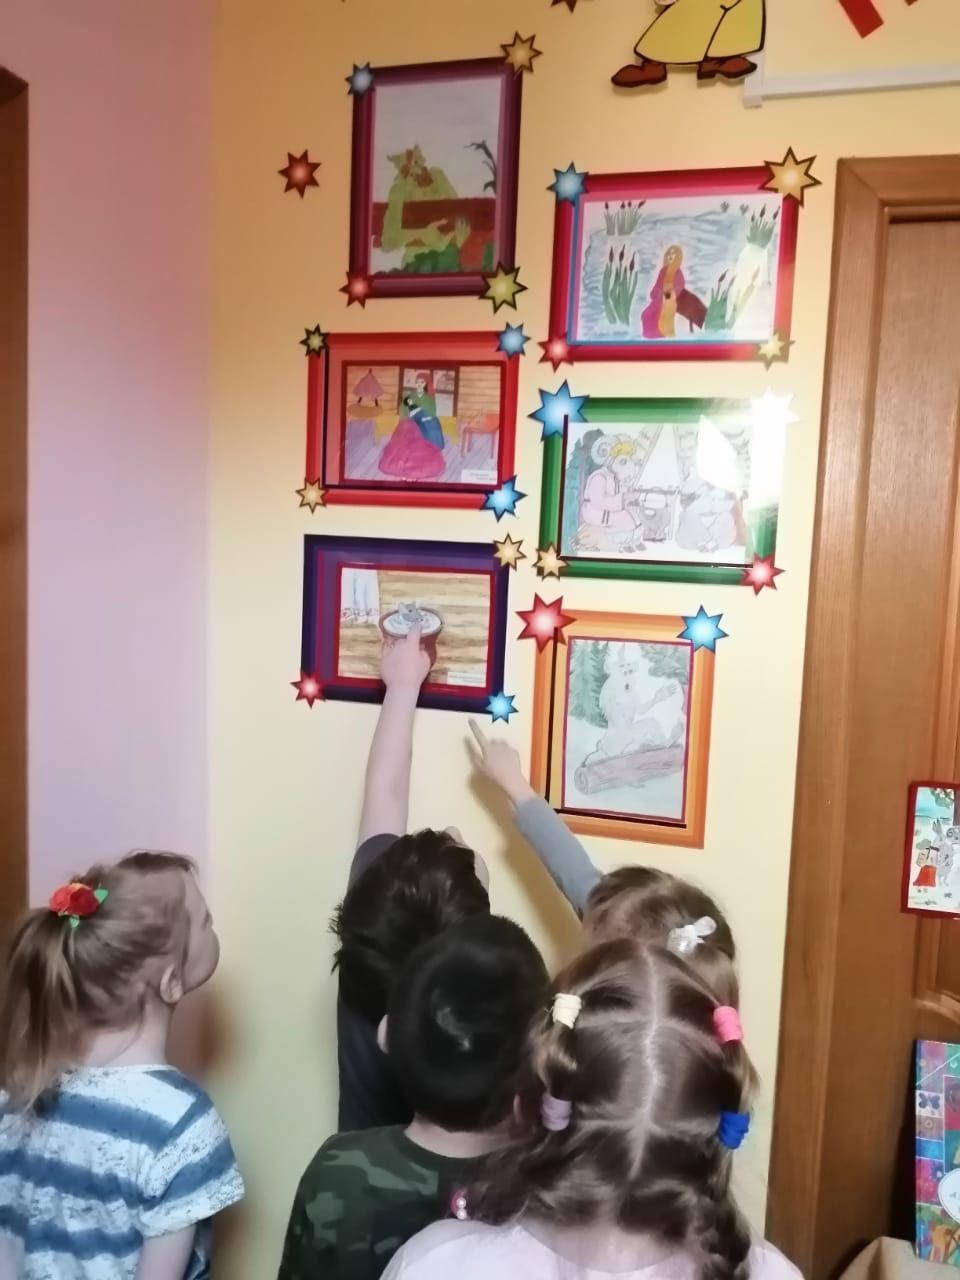 В детском саду "Искорка" прошли мероприятия, посвященные Году родных языков и народного единства РТ